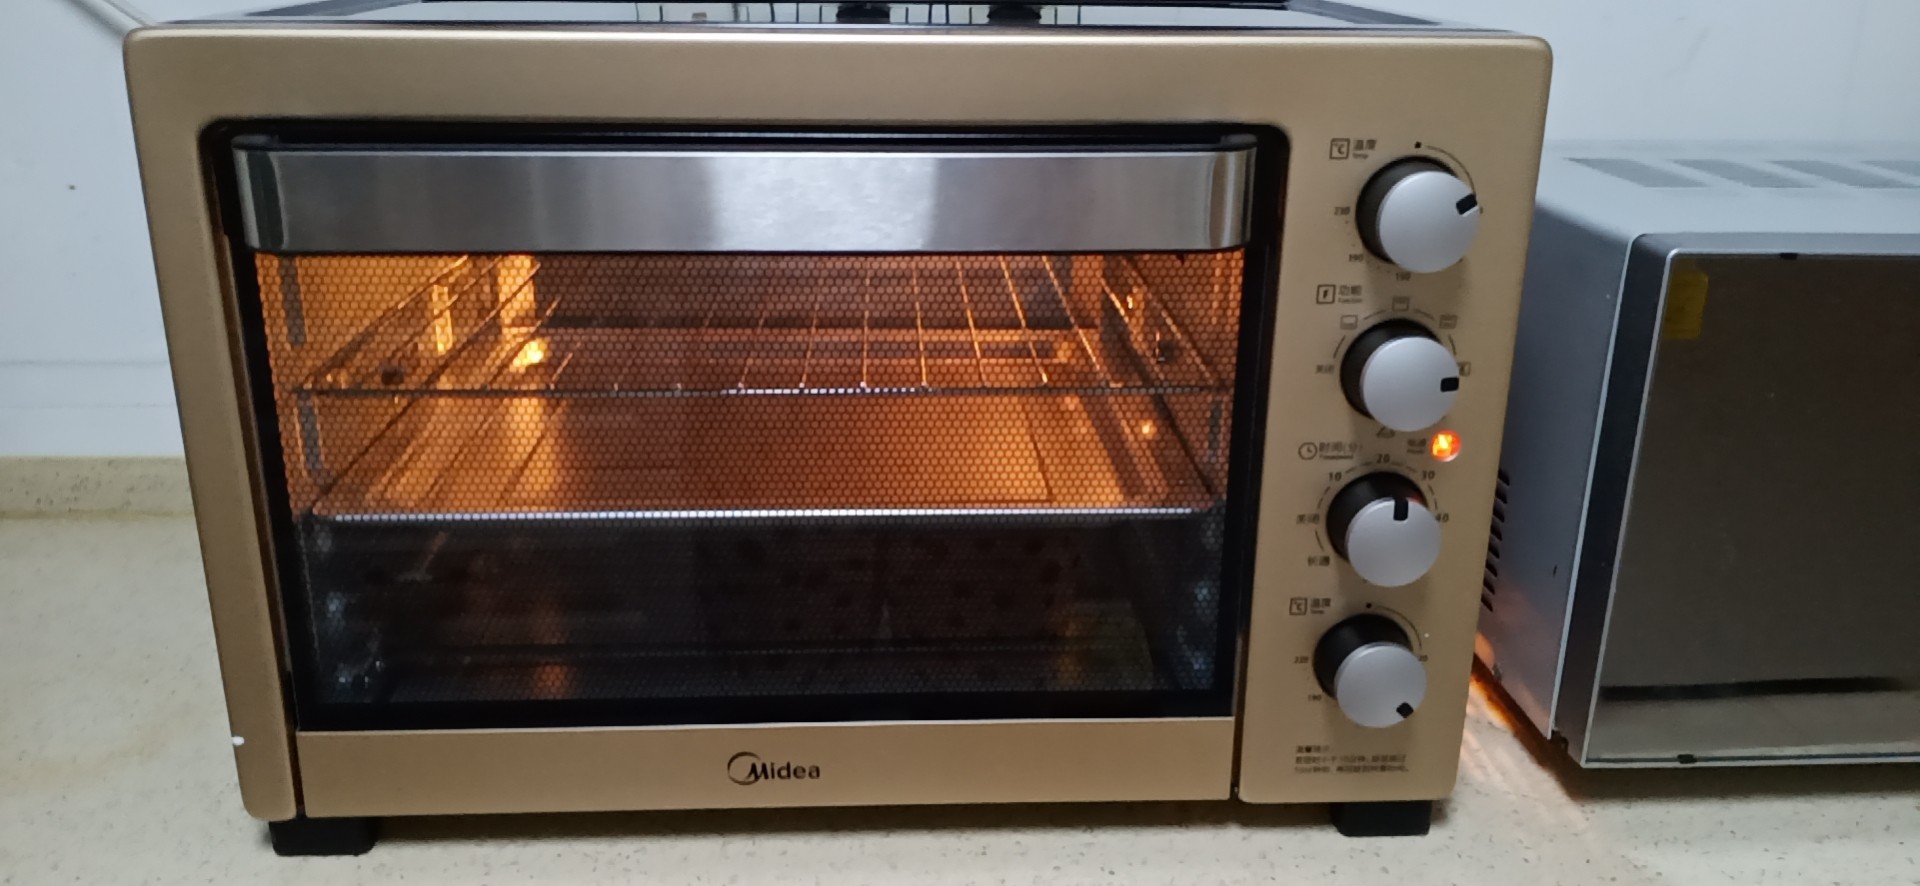 美的38l电烤箱 家用大容量 独立控温烘焙烤箱烤炉 粉色t3-387d晒单图